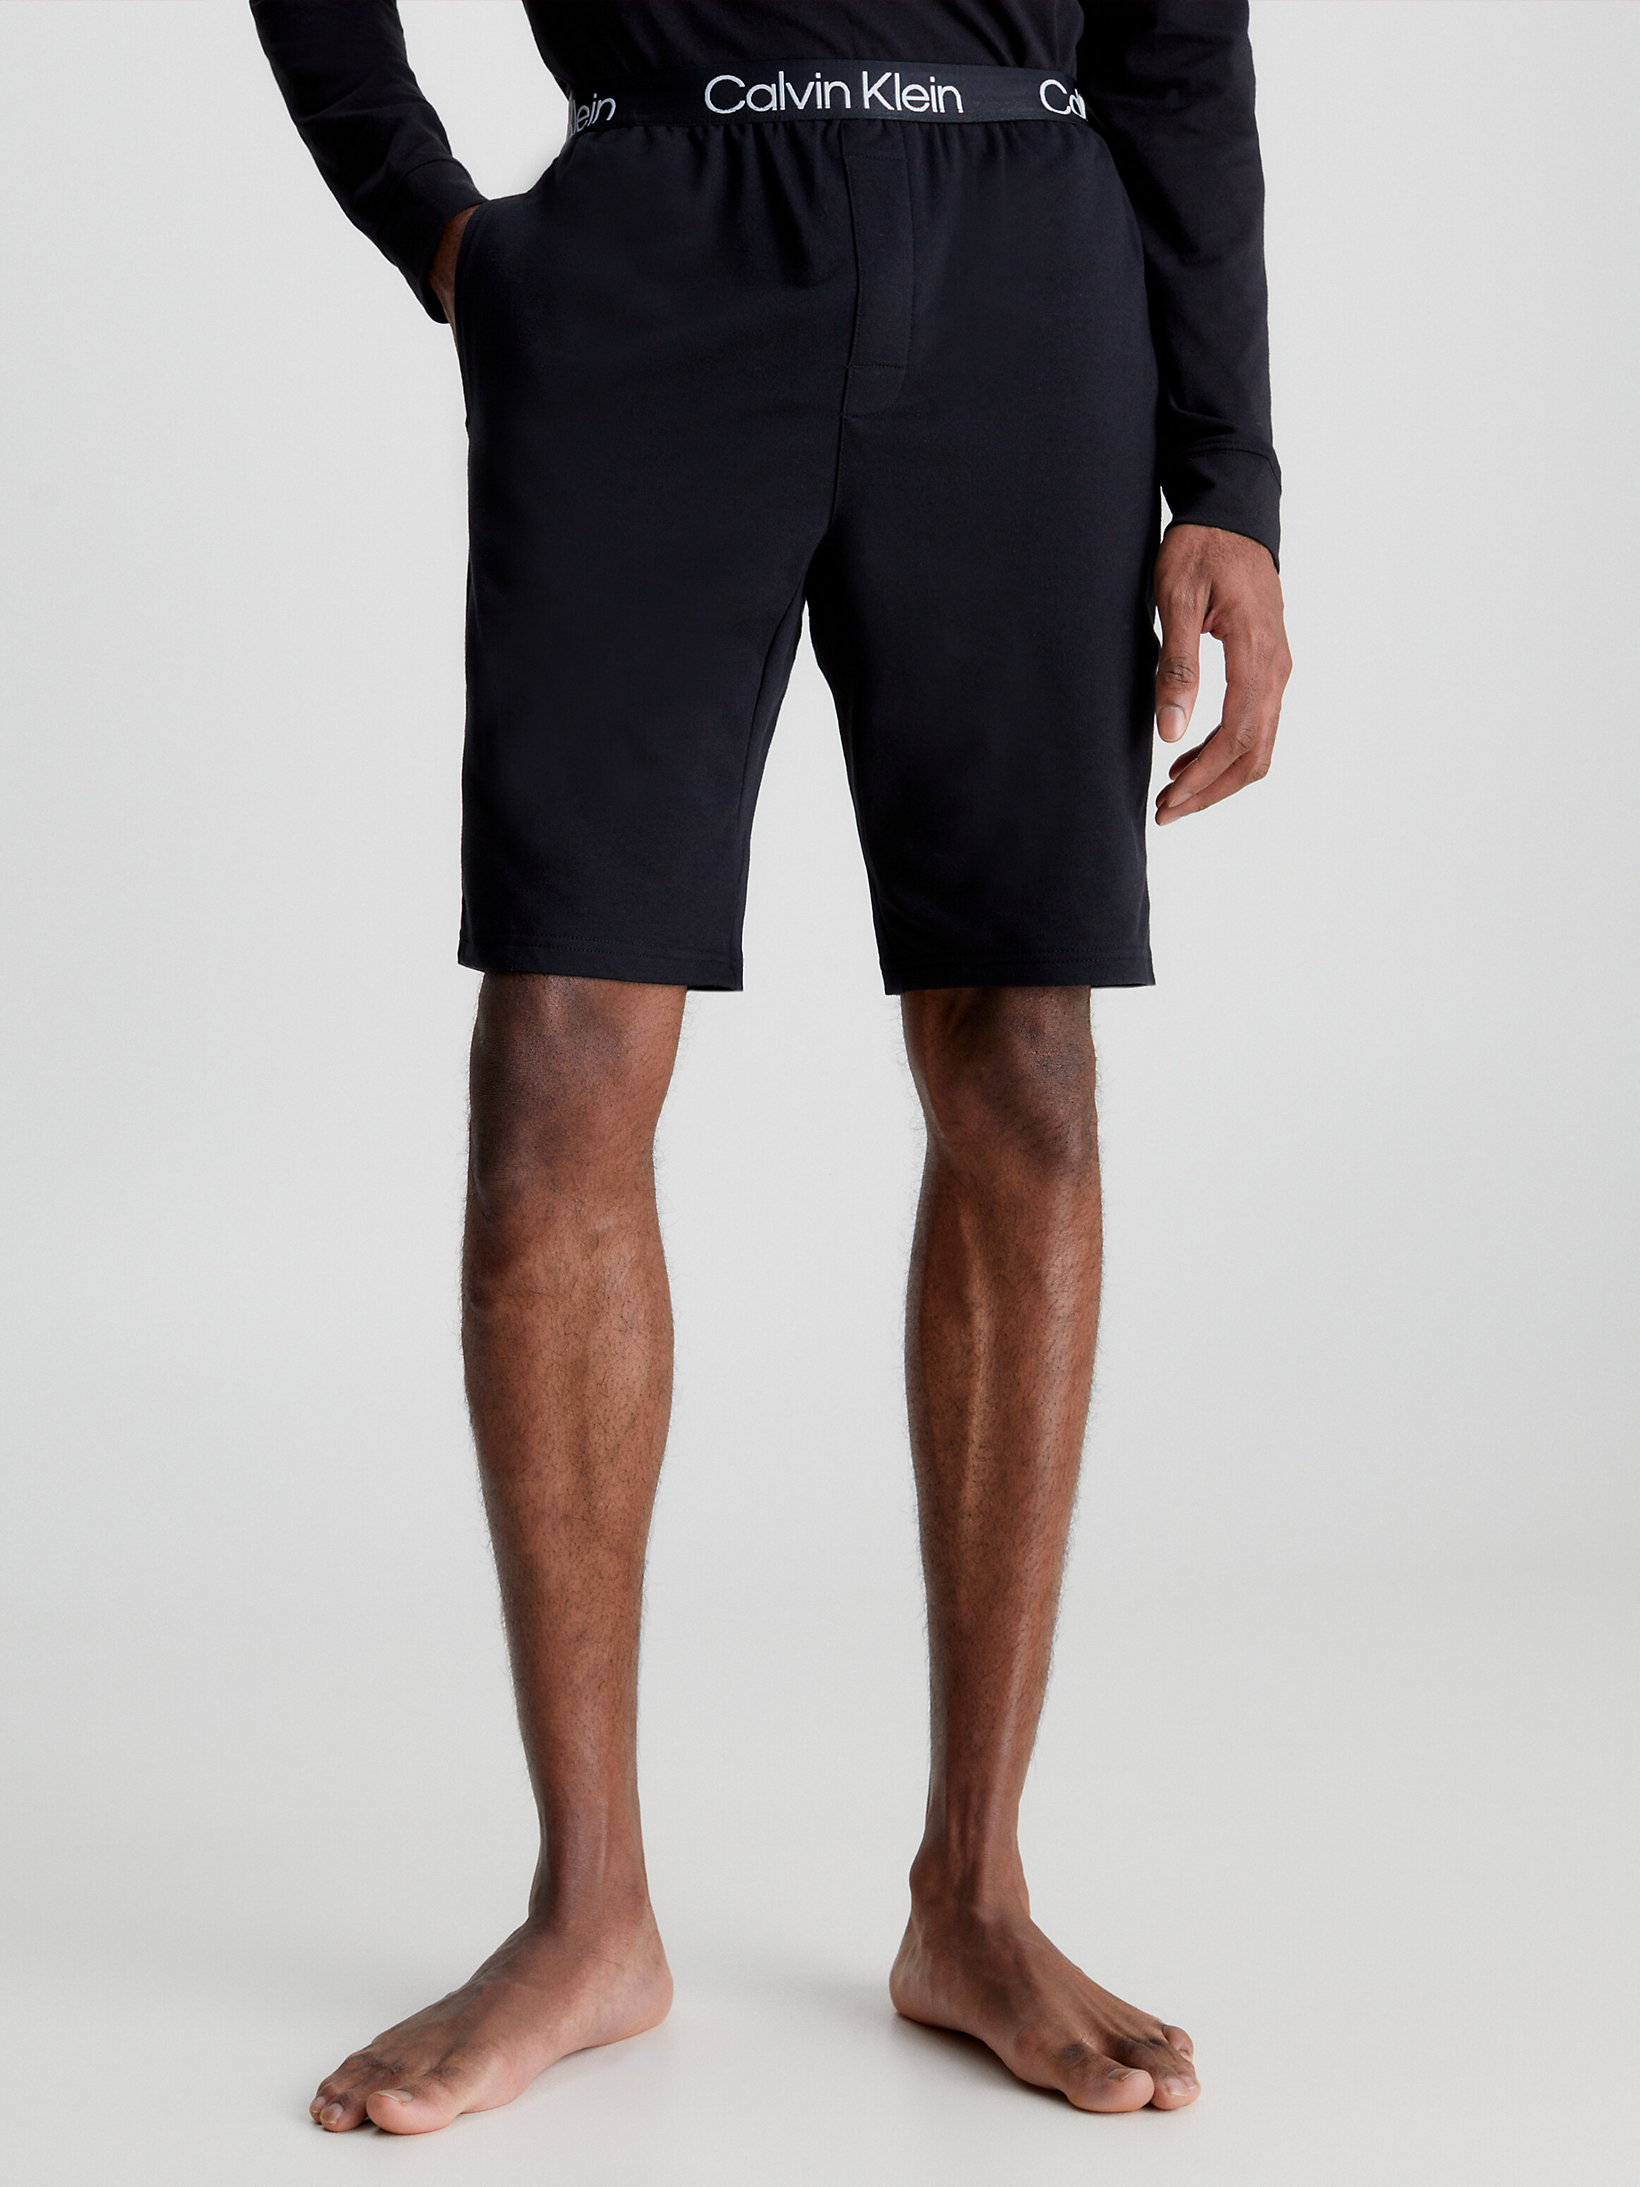 Black Lounge Shorts - Modern Structure undefined men Calvin Klein